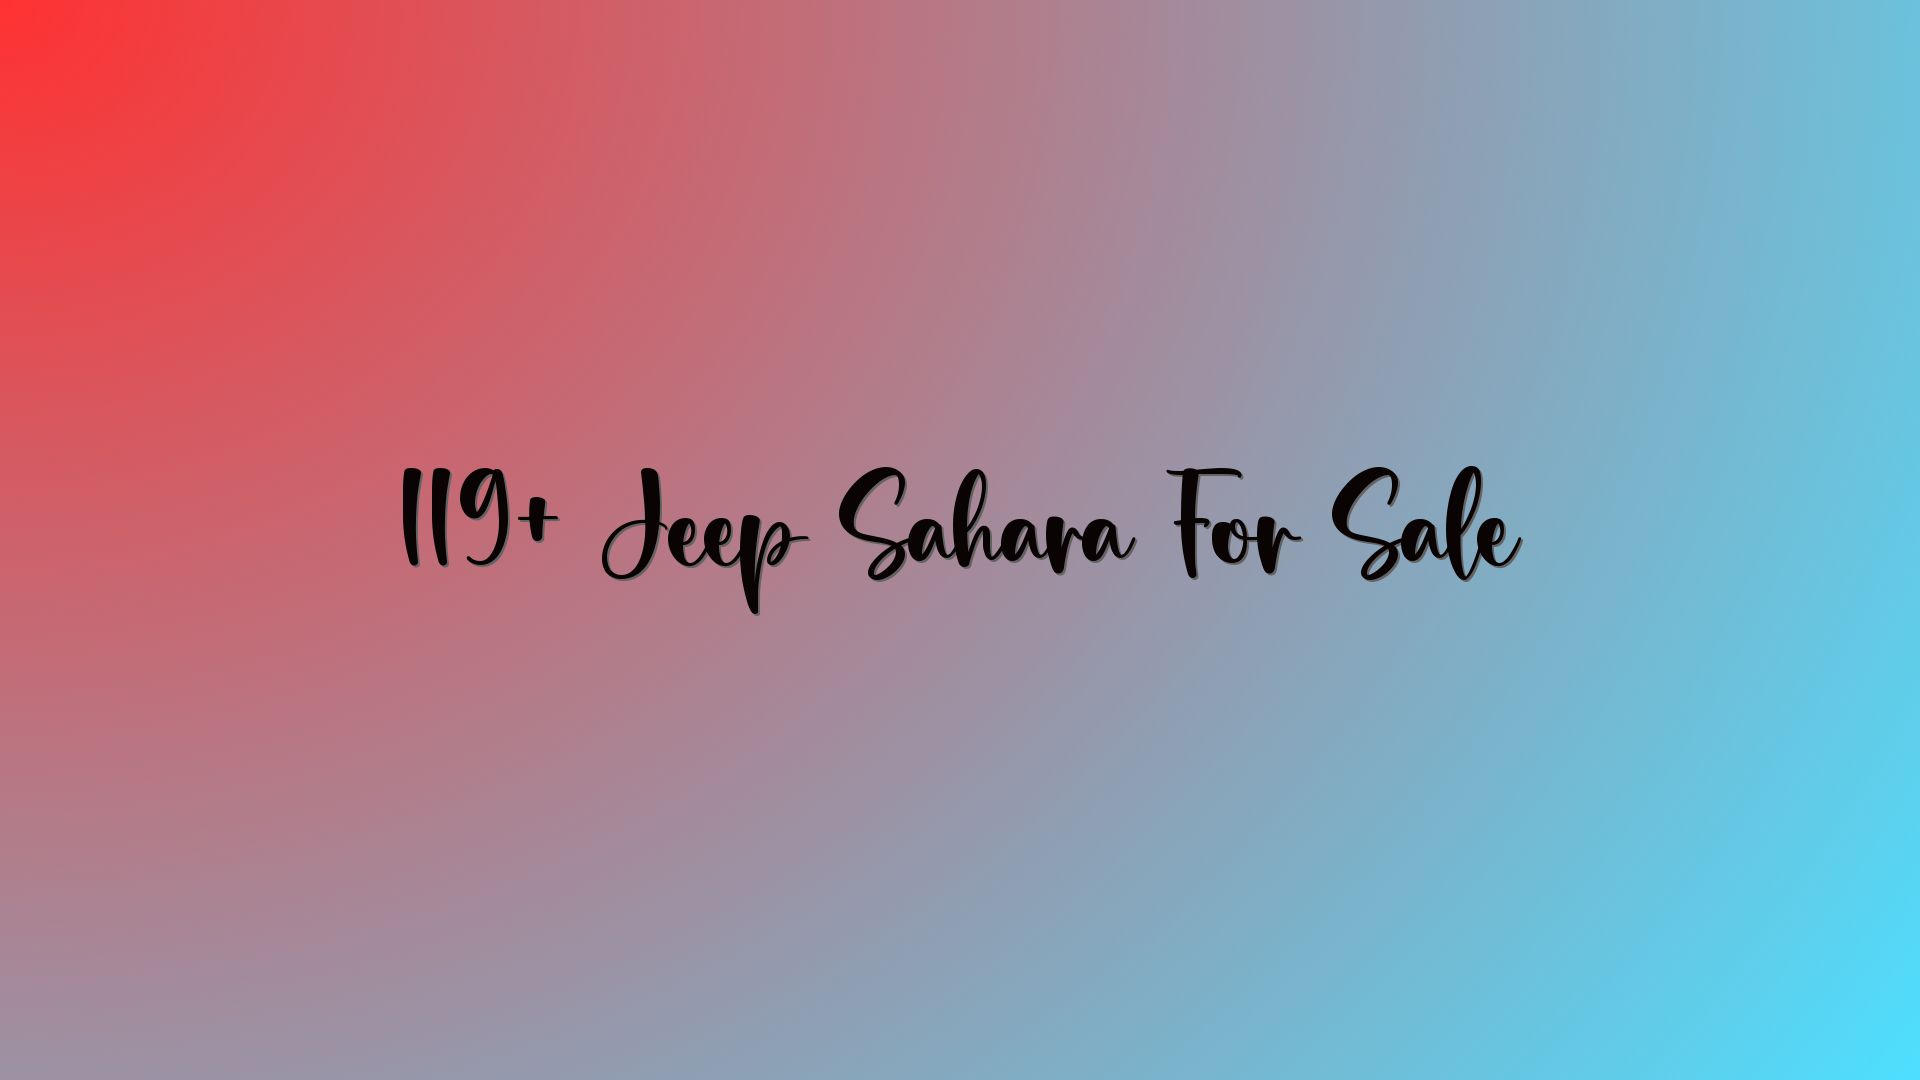 119+ Jeep Sahara For Sale